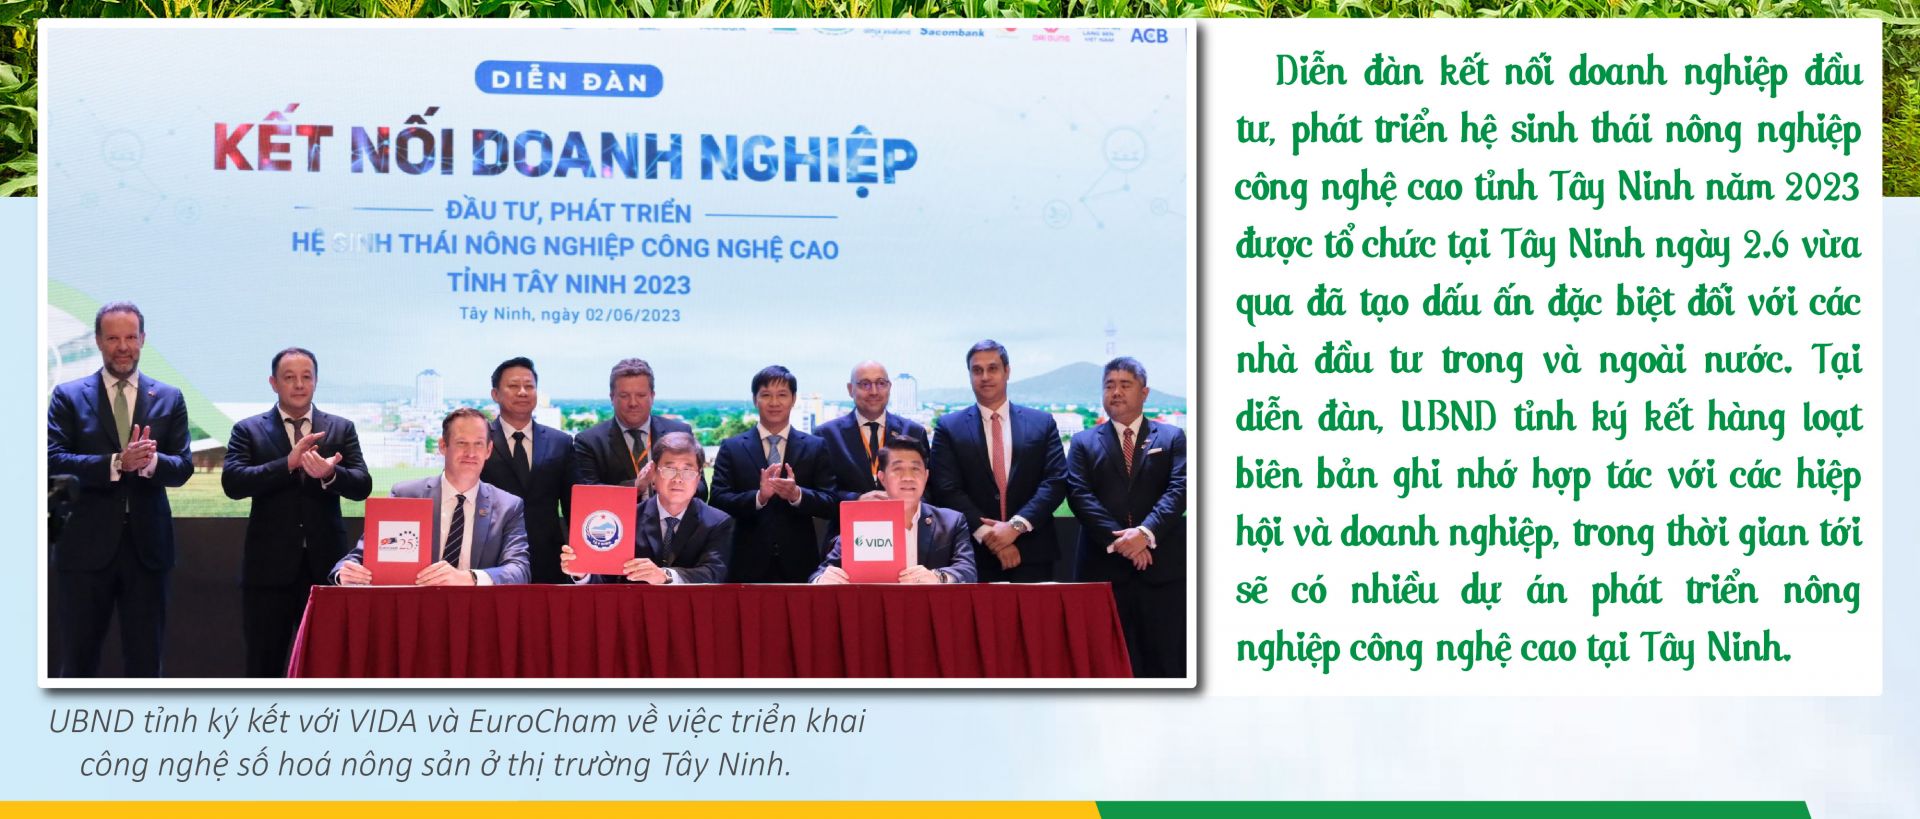 Tây Ninh - miền “đất lành” cho những dự án nông nghiệp công nghệ cao